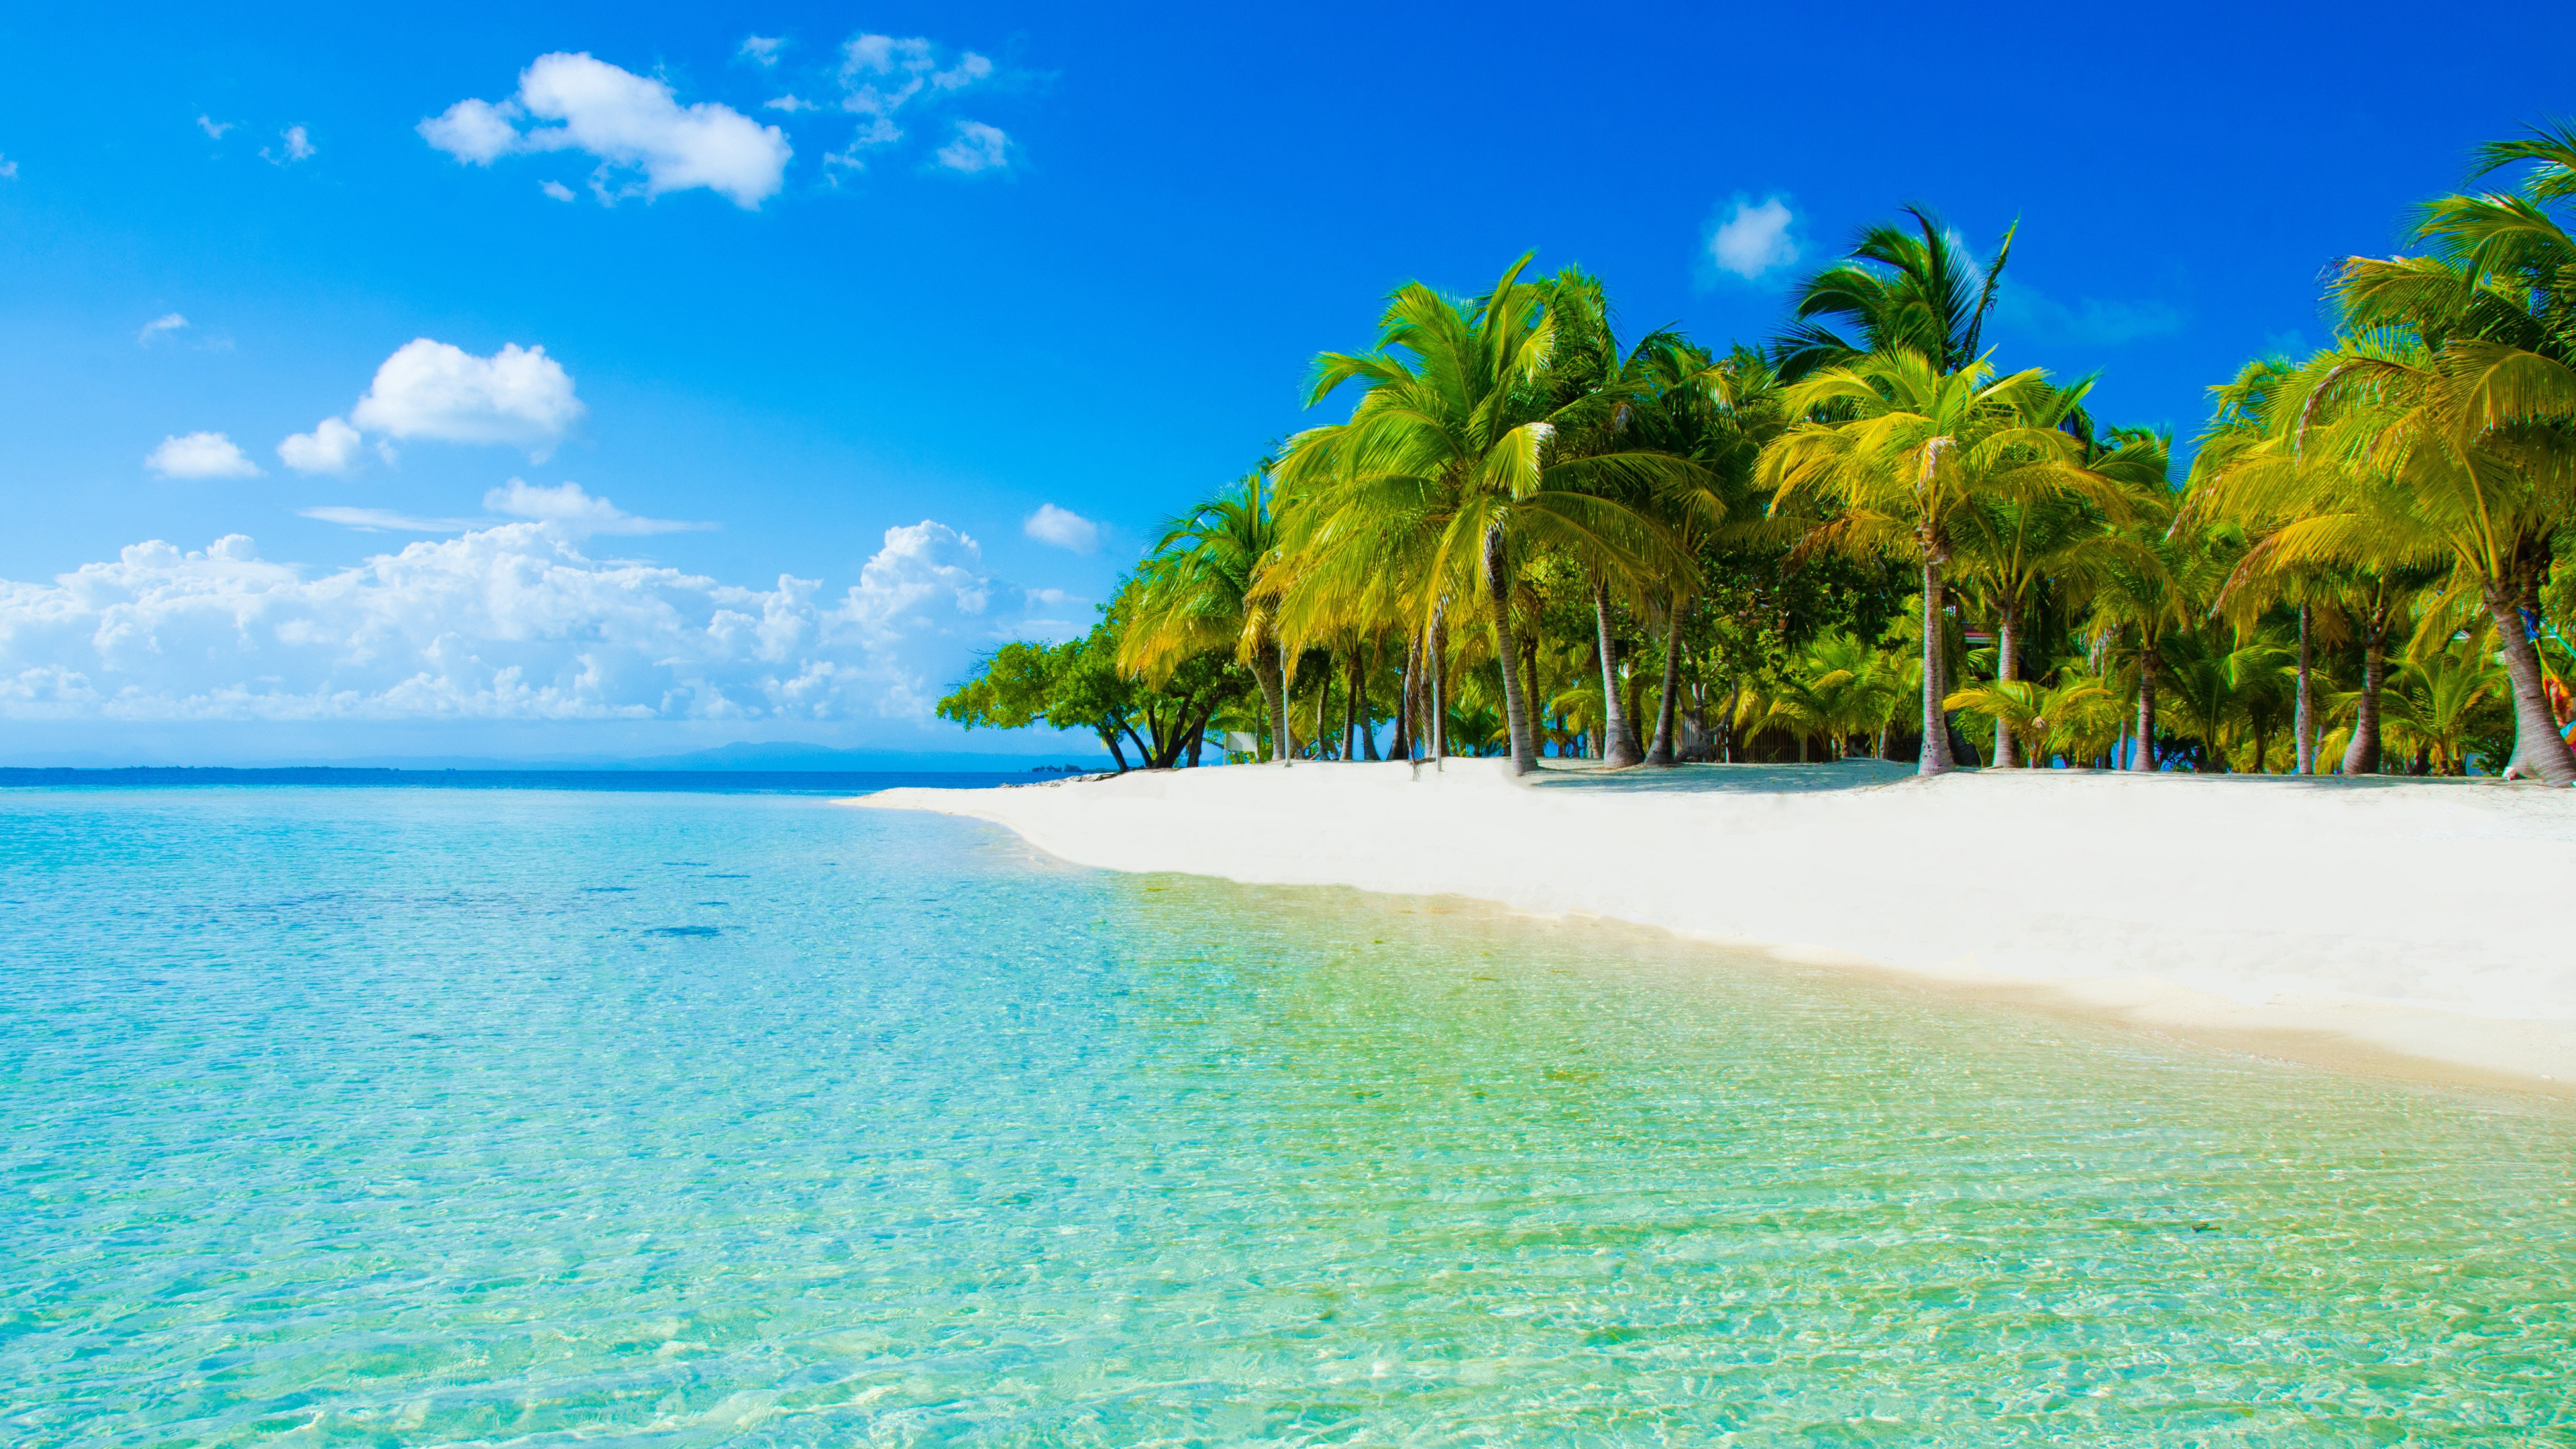 度假村, 热带地区, 大海, 海洋, 加勒比 壁纸 3840x2160 允许